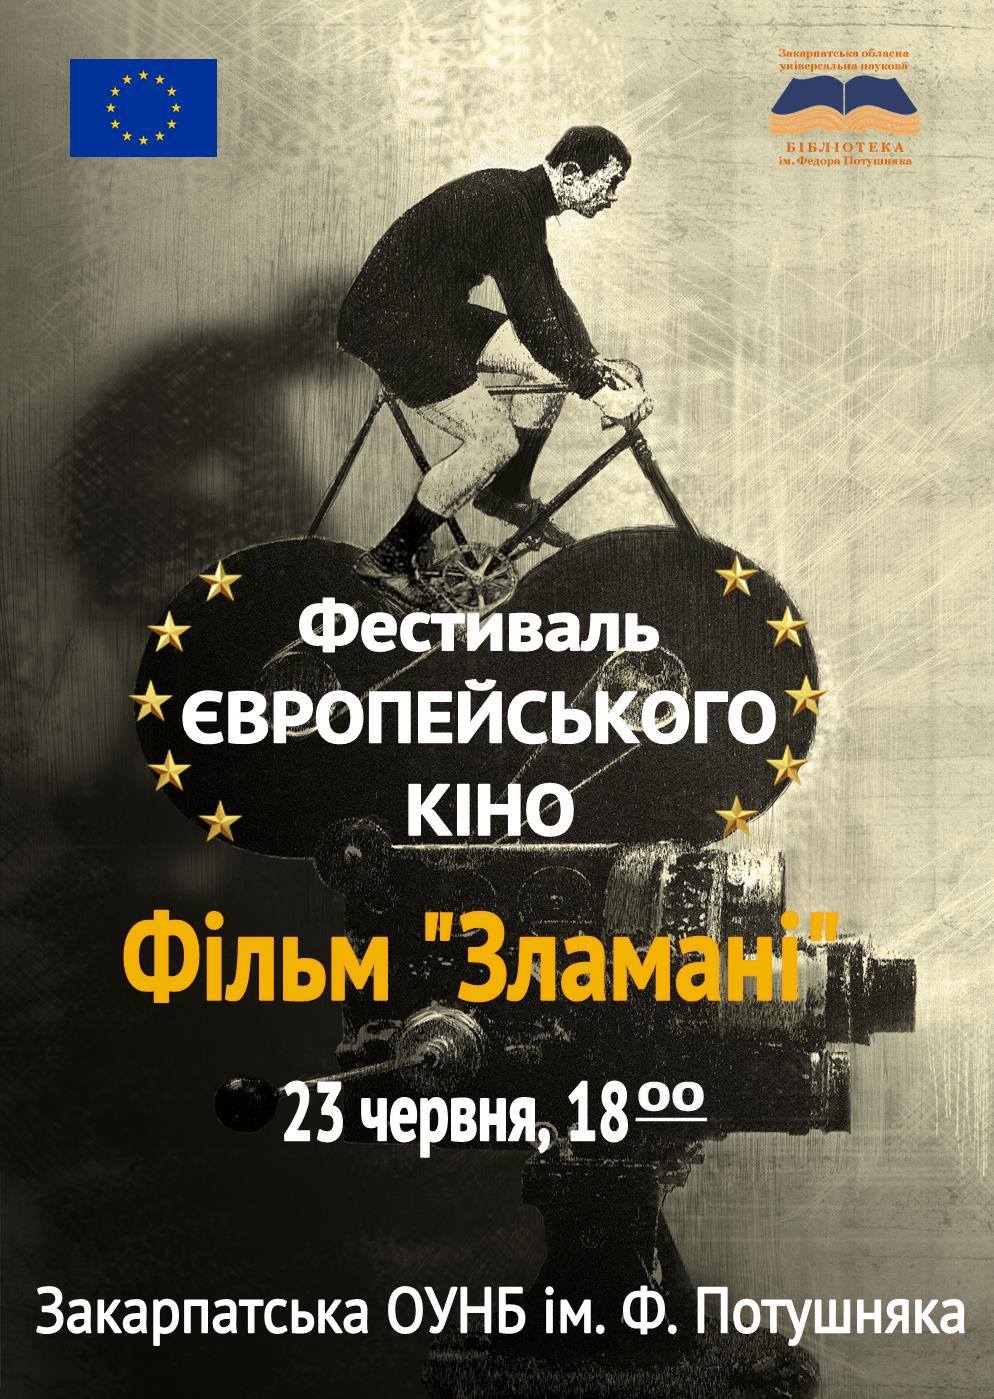 23 червня о 18.00 у головній книгозбірні краю (пр.Свободи,16) відбудеться показ фільму «Зламані» в рамках Фестивалю європейського кіно.     